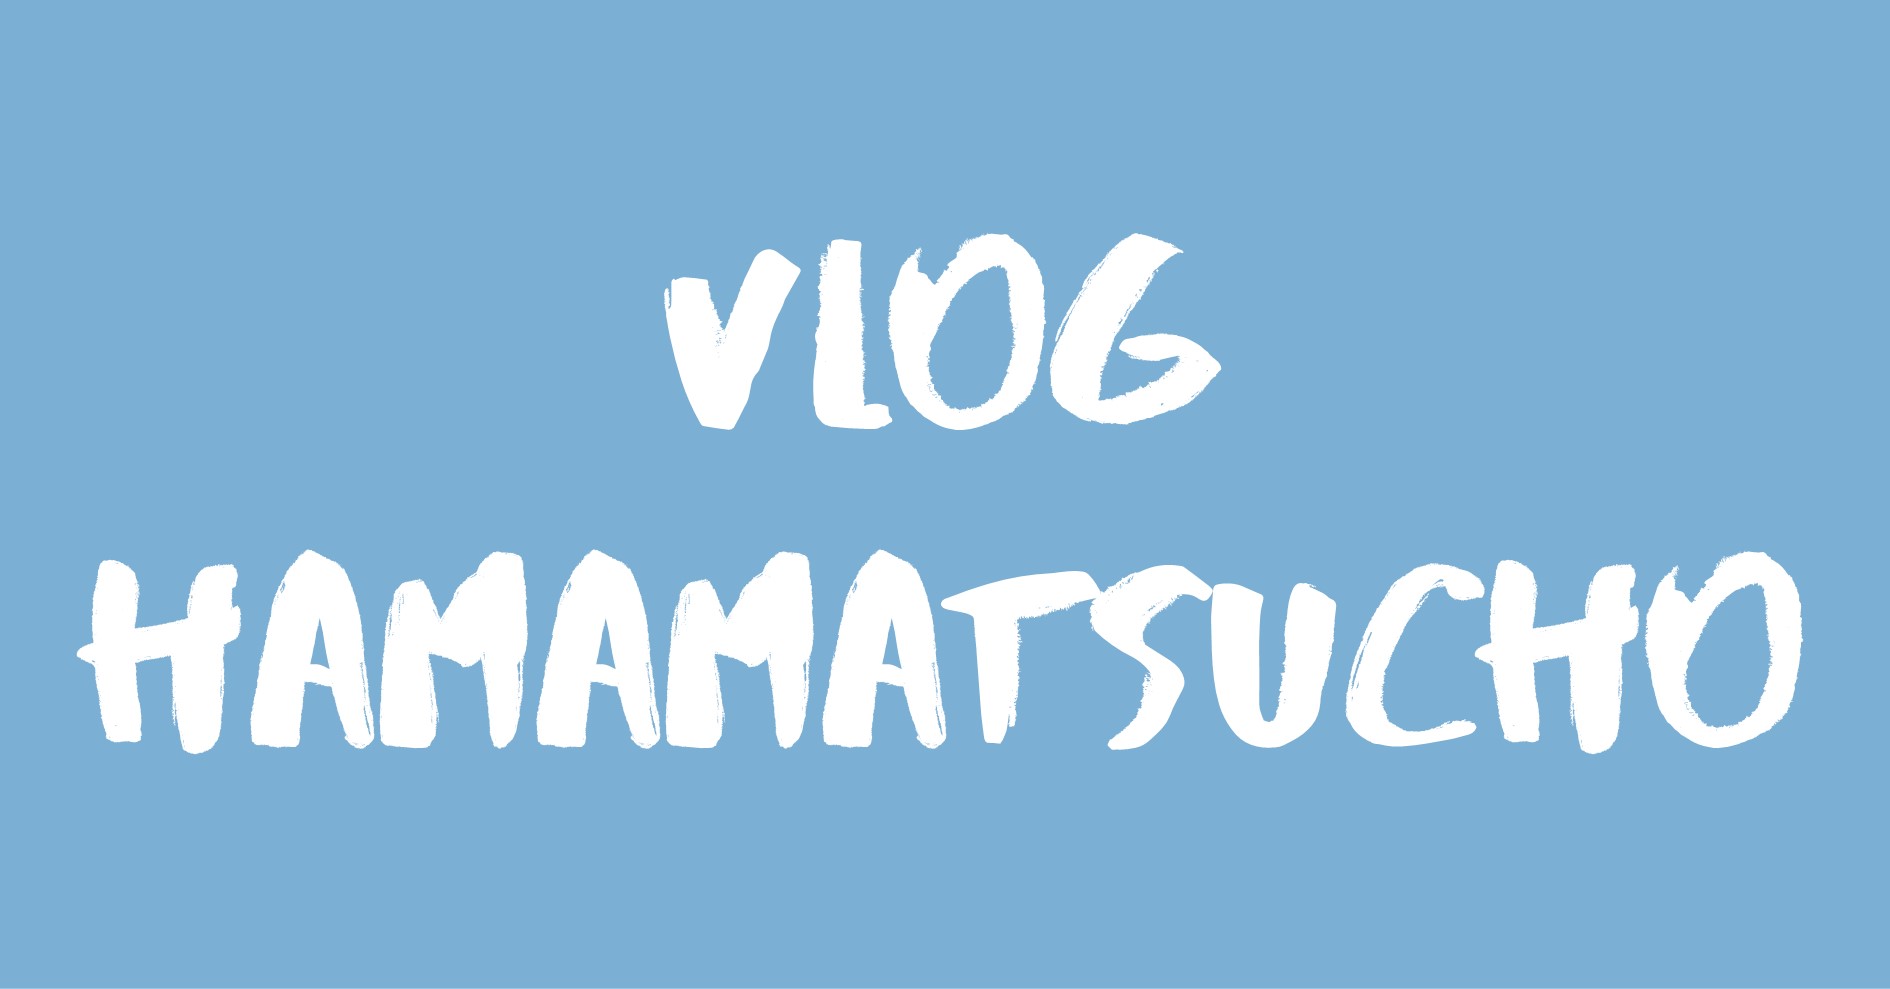 Vlog Hamamatsucho